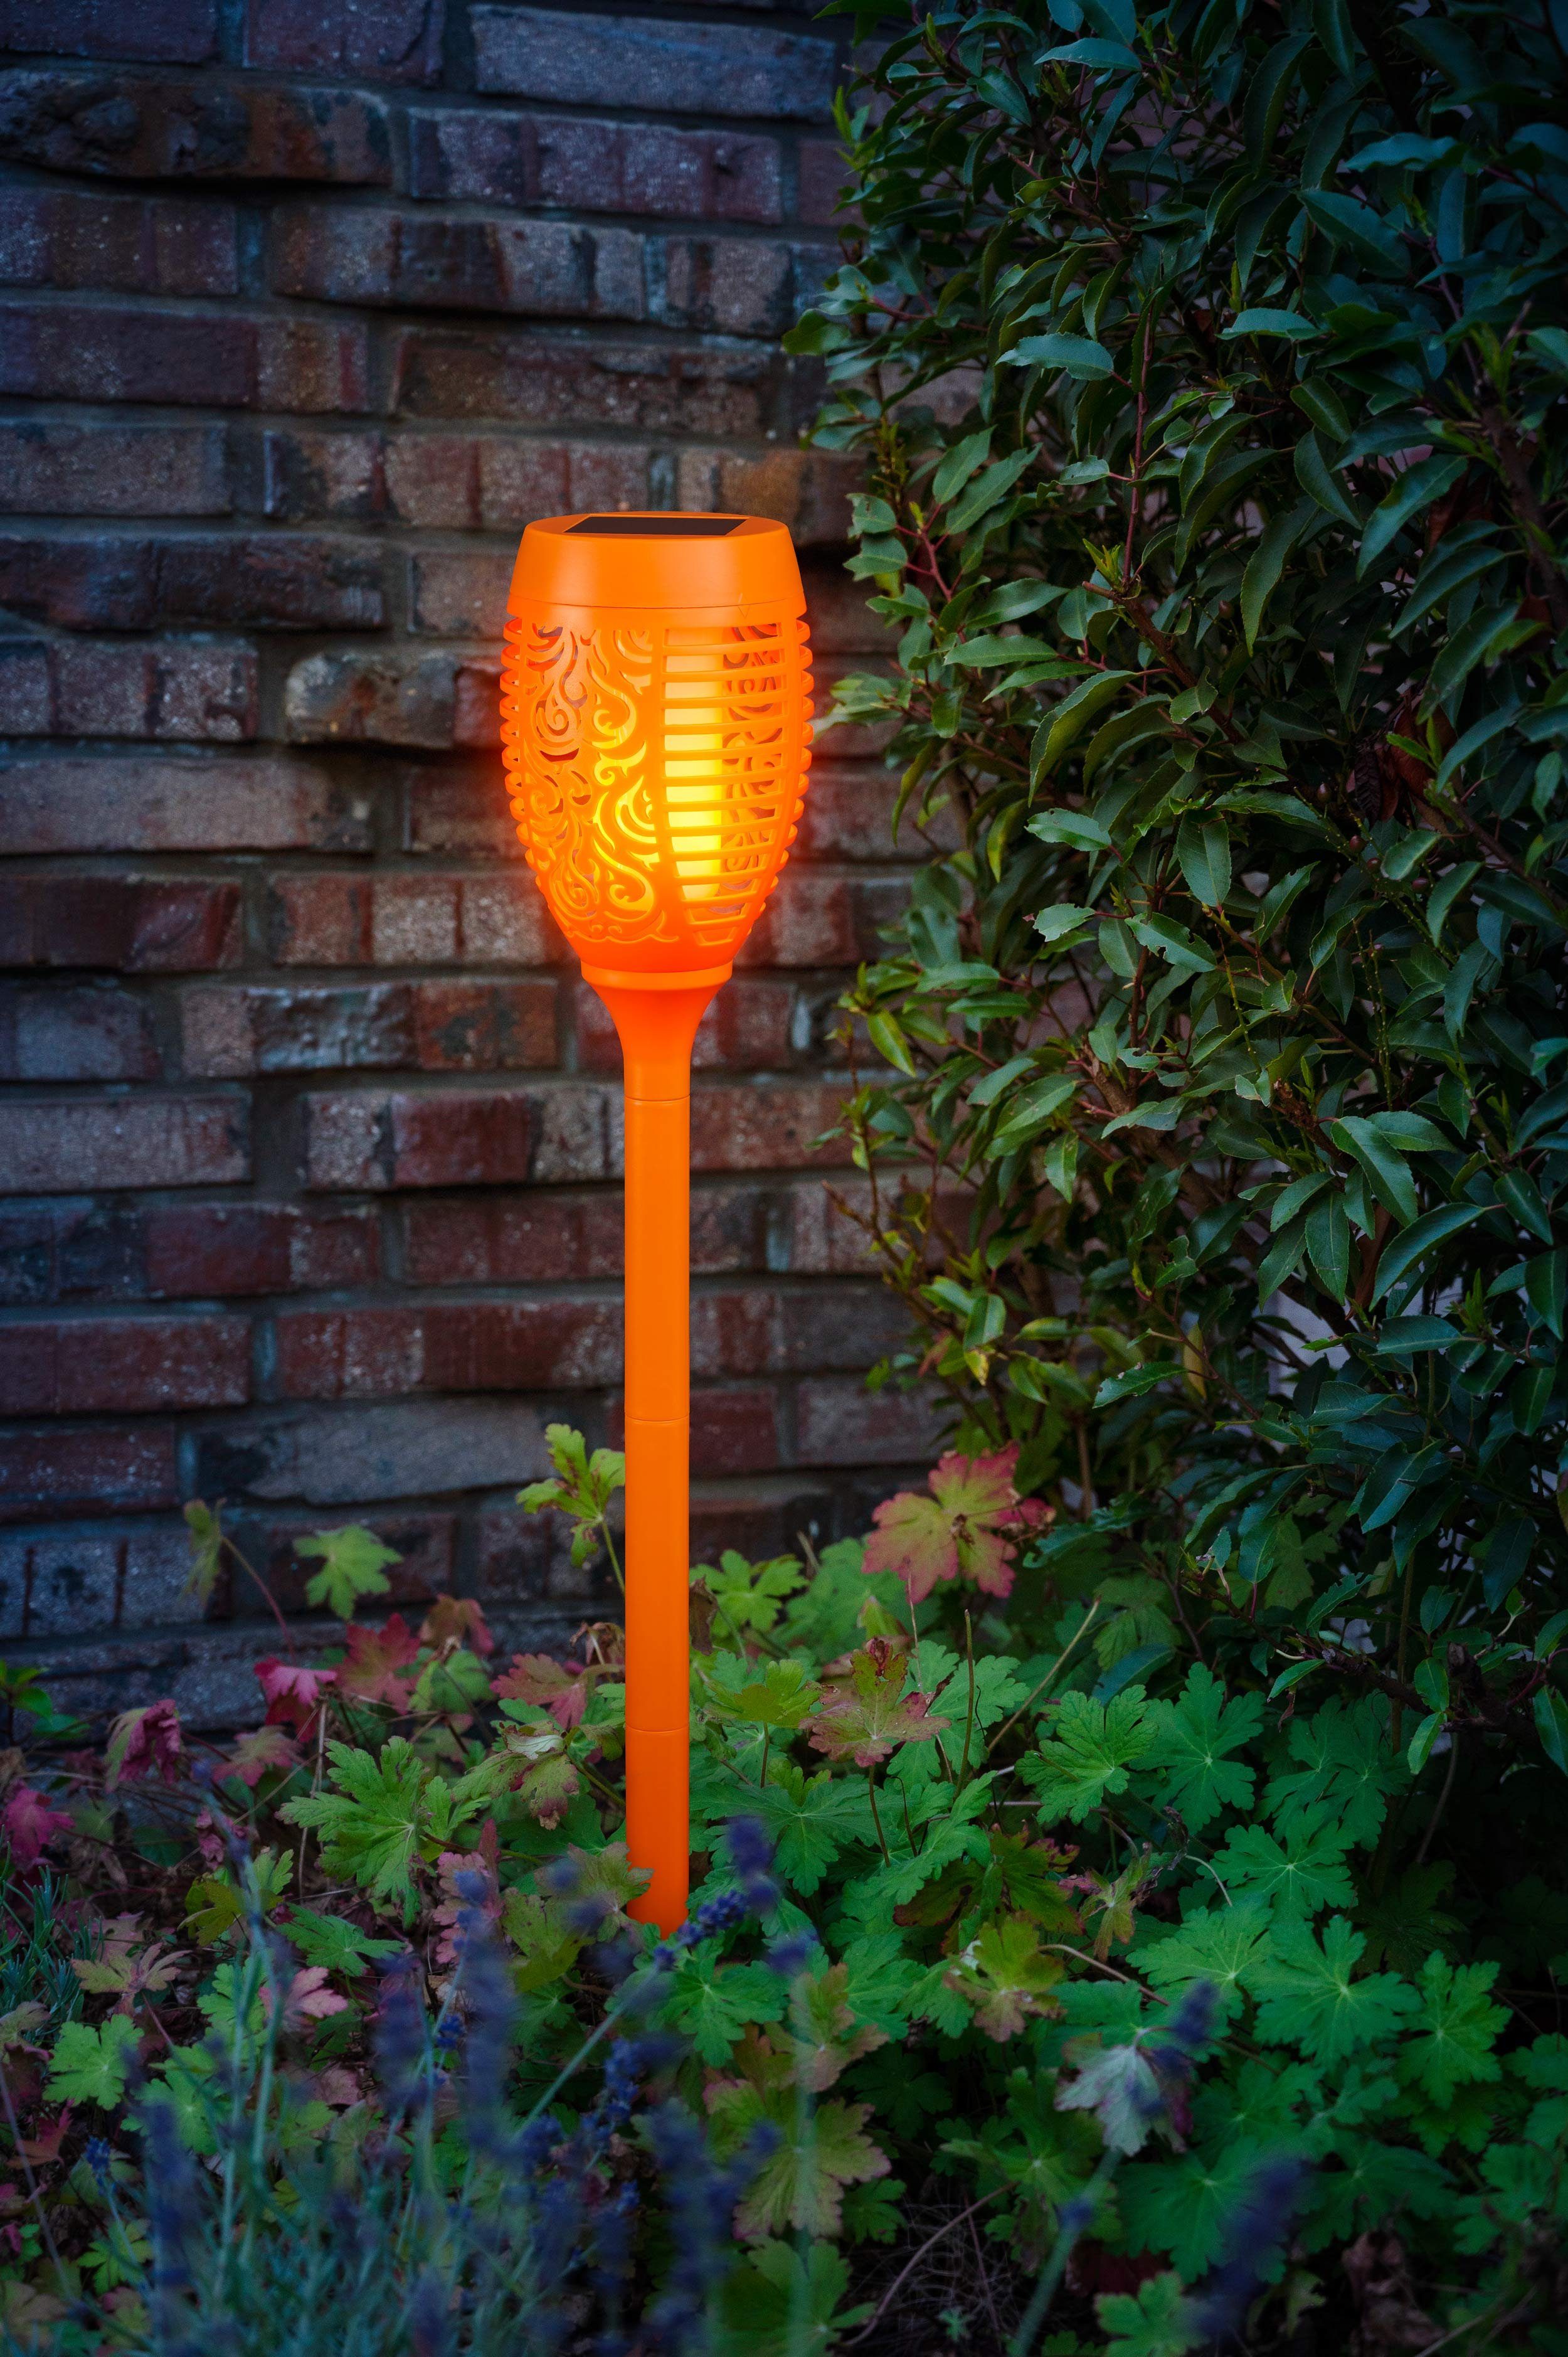 kamelshopping LED Gartenfackel Solarleuchten für Außen, bunte Gartenfackel mit Flammeneffekt, LED fest integriert, bunt, wasserdicht, Dämmerungssensor, ca. 72 cm hoch, bunt orange